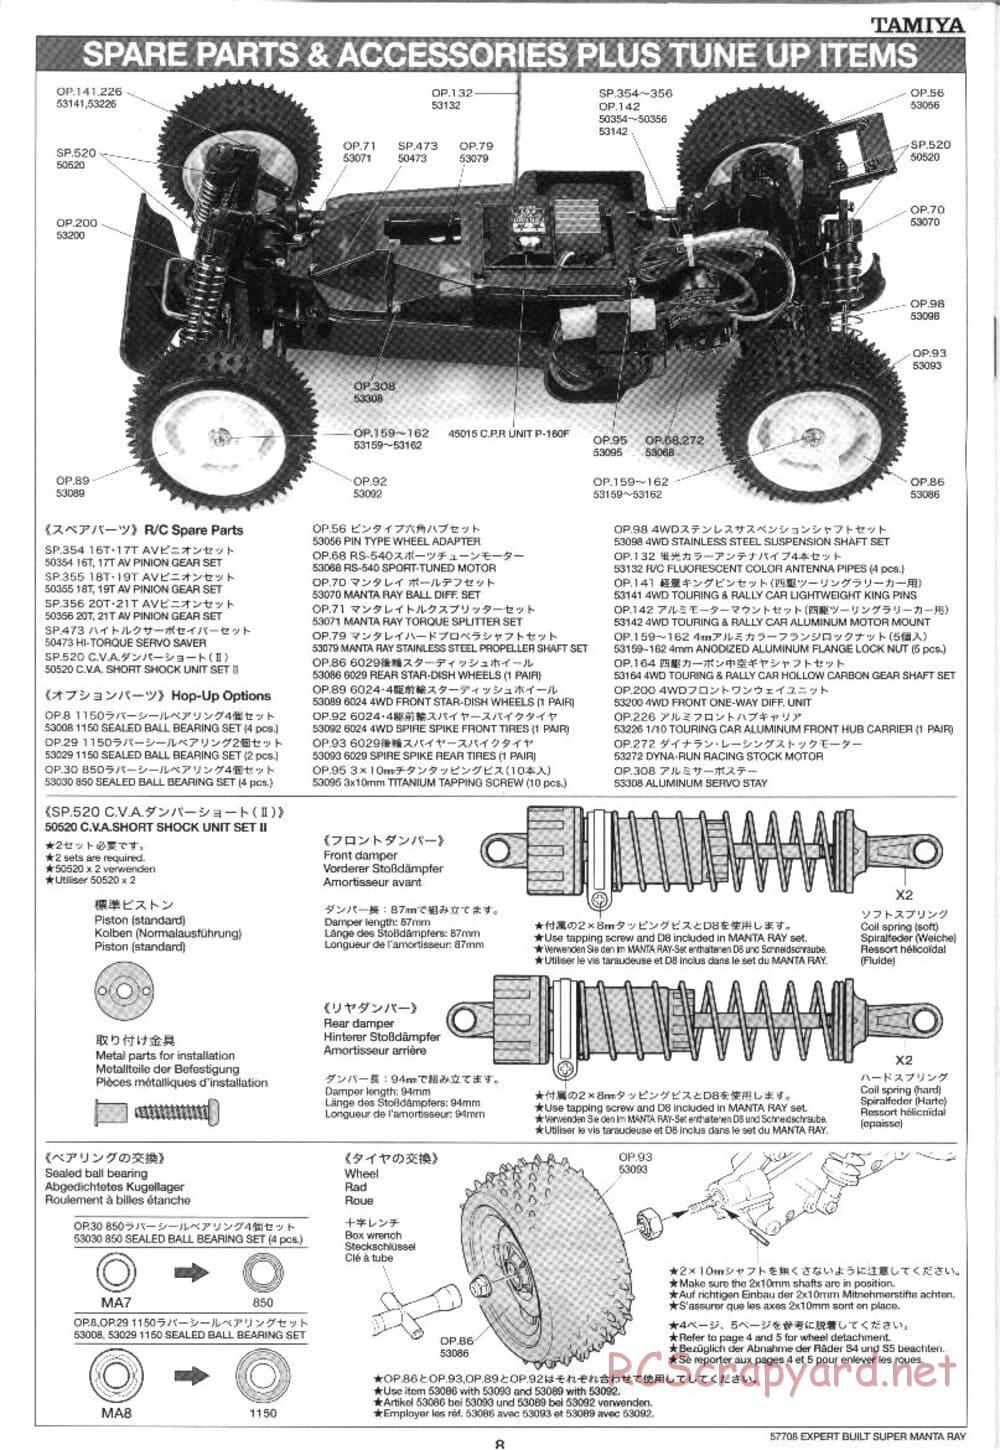 Tamiya - XB Super Manta Ray - DF-01 Chassis - Manual - Page 8